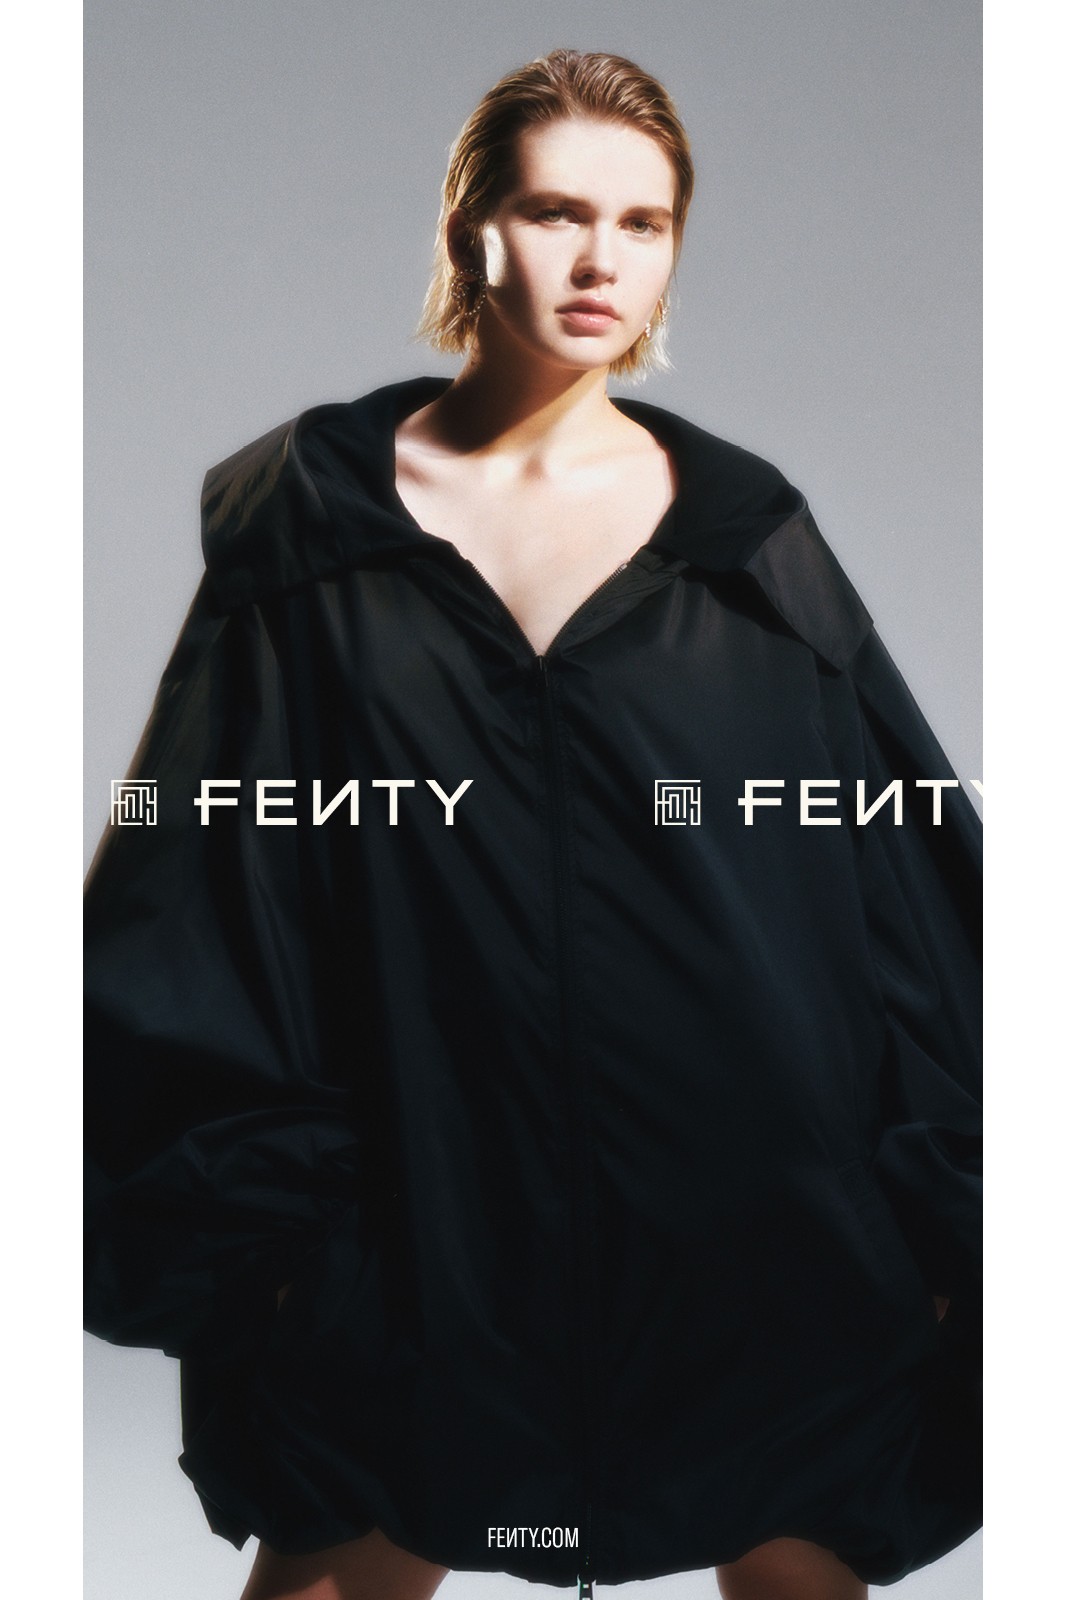 Рианна выпустила кампанию декабрьской коллекции Fenty (фото 2)